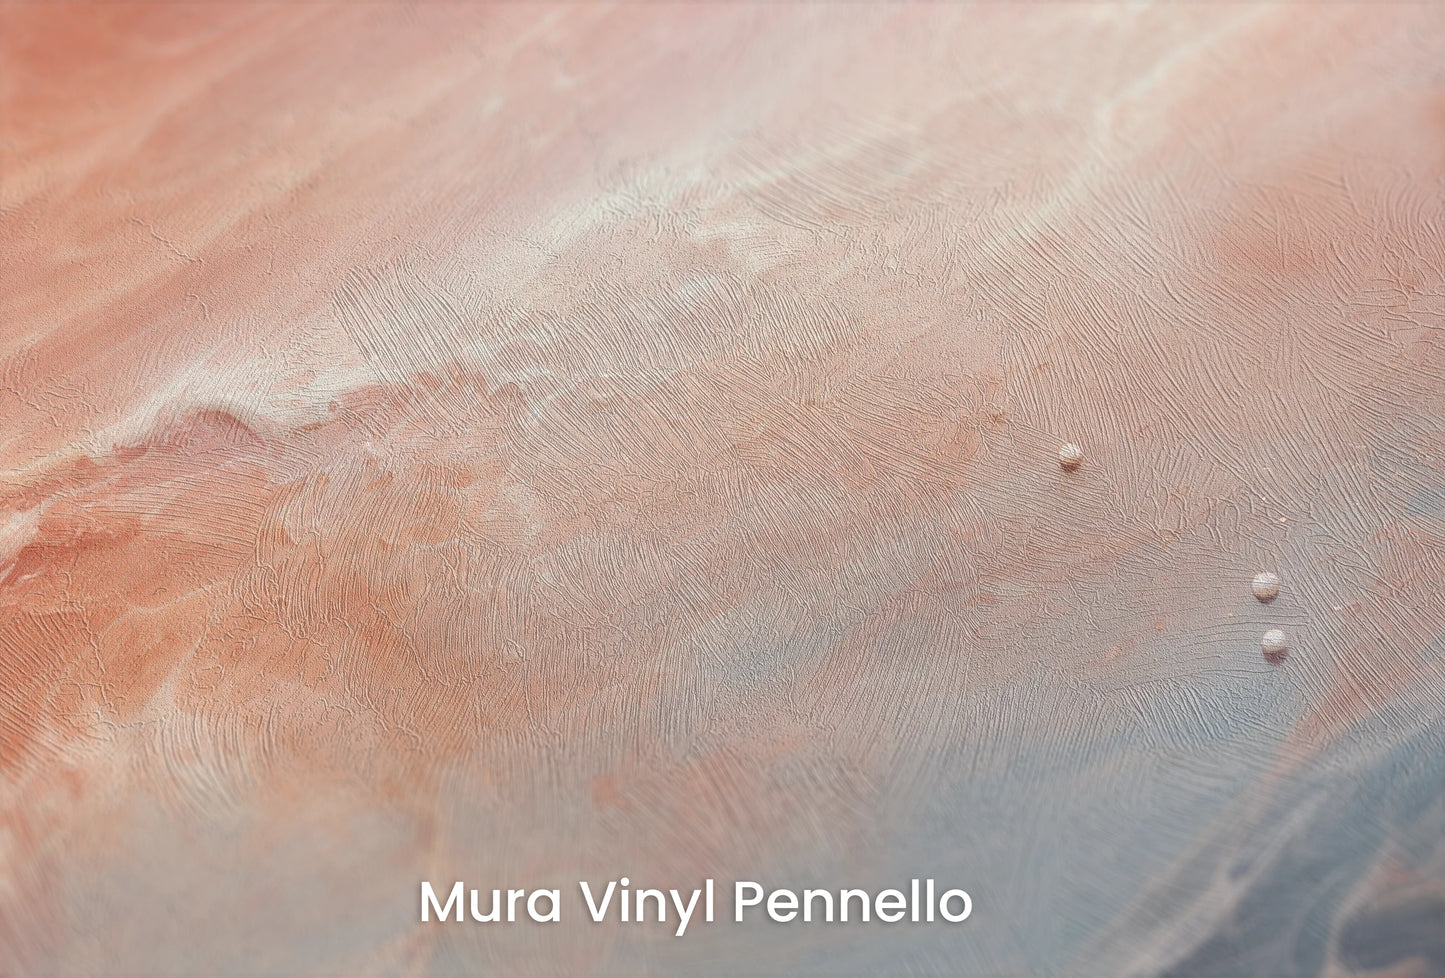 Zbliżenie na artystyczną fototapetę o nazwie Venusian Skies na podłożu Mura Vinyl Pennello - faktura pociągnięć pędzla malarskiego.